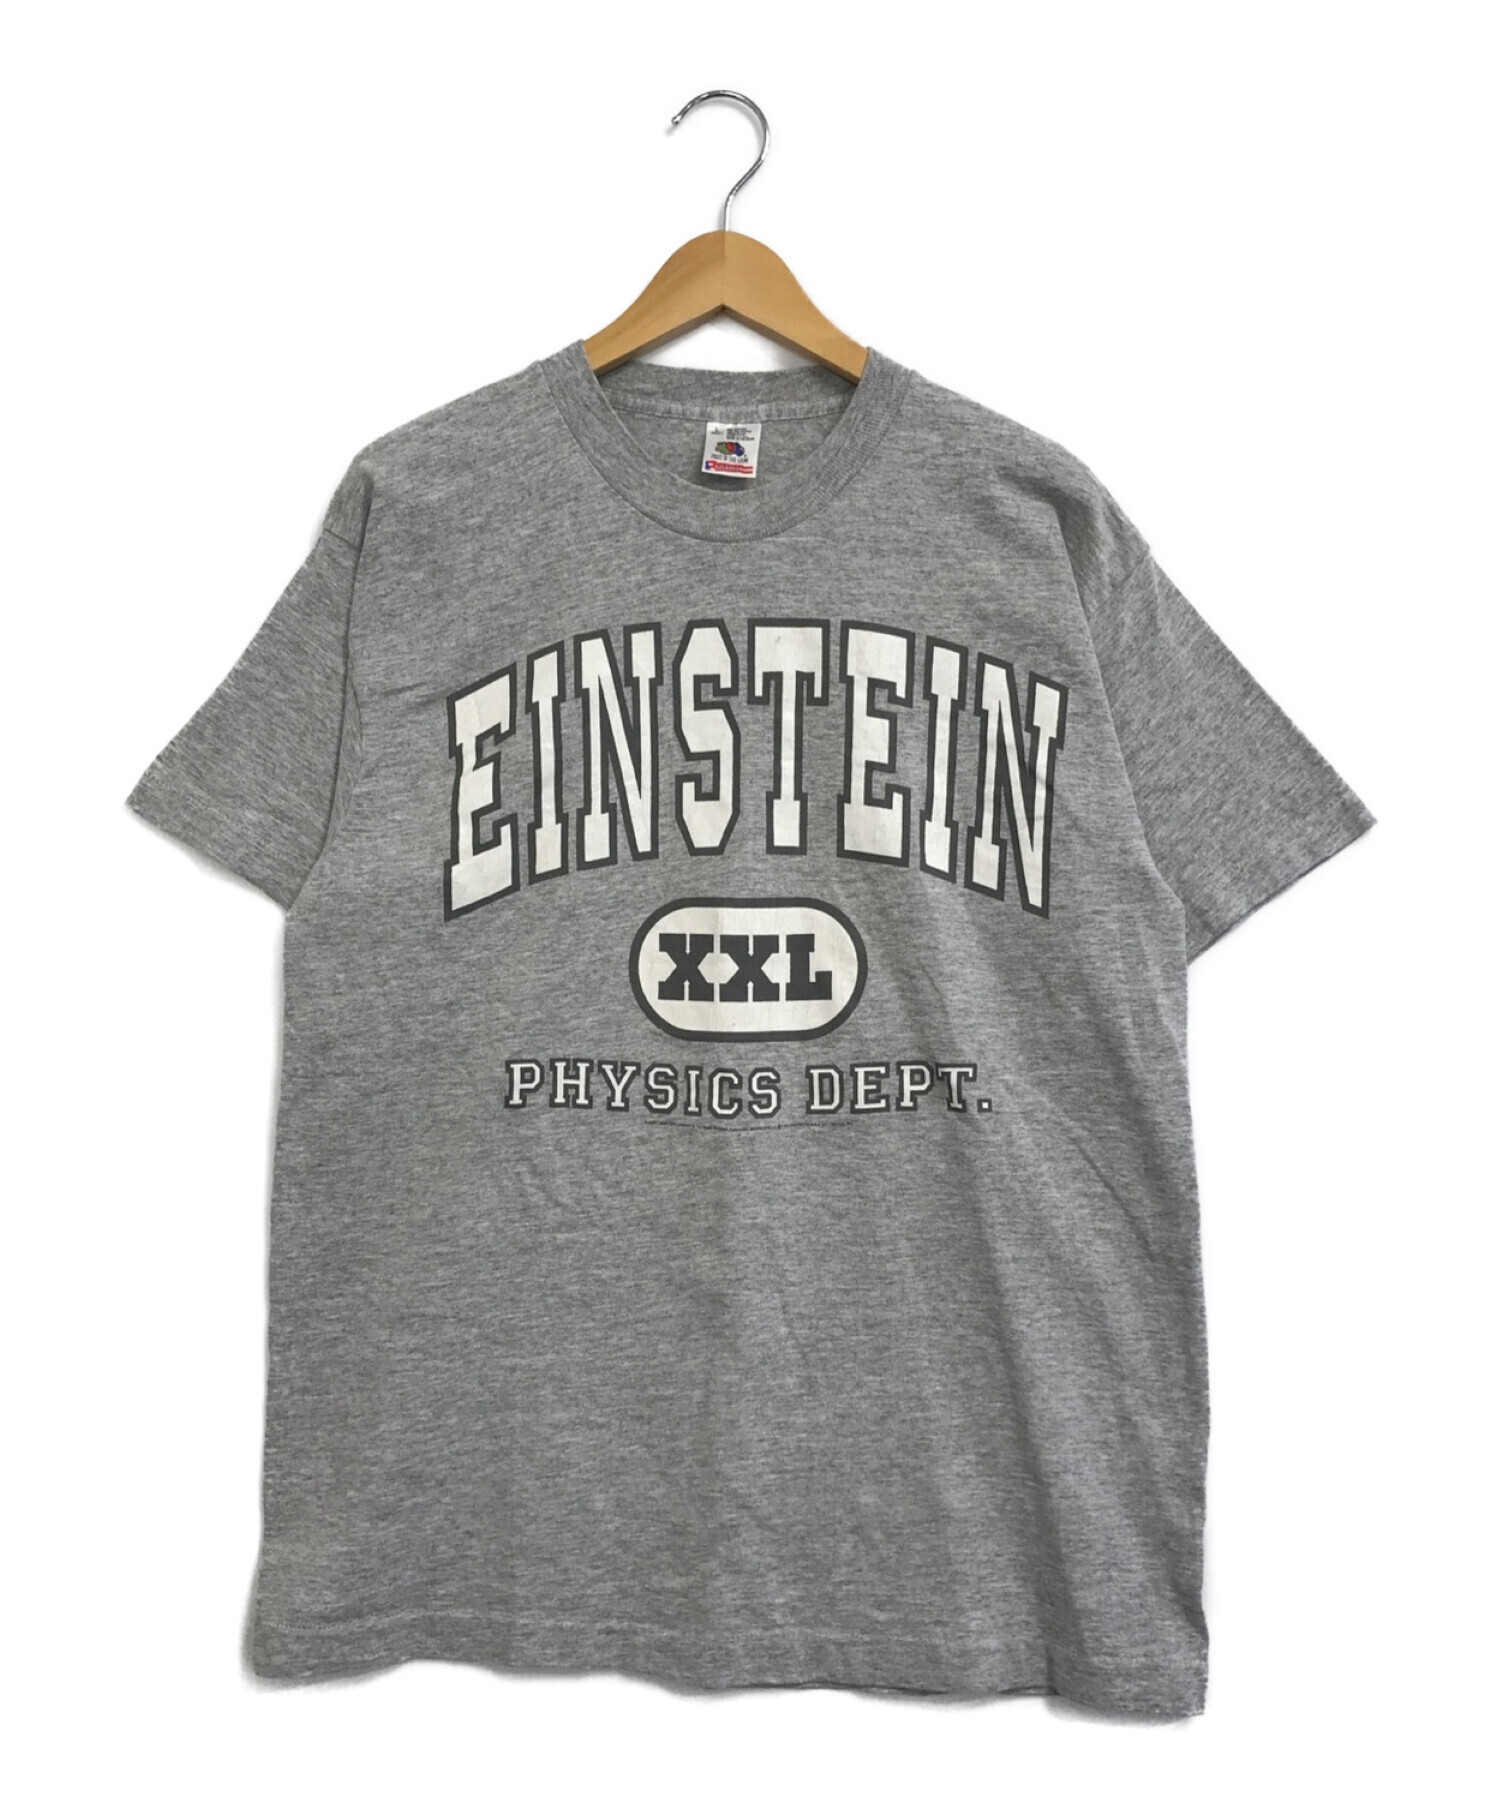 中古 古着通販 Einstein アインシュタイン 古着 90 S偉人tシャツ グレー サイズ L ブランド 古着通販 トレファク公式 Trefac Fashion